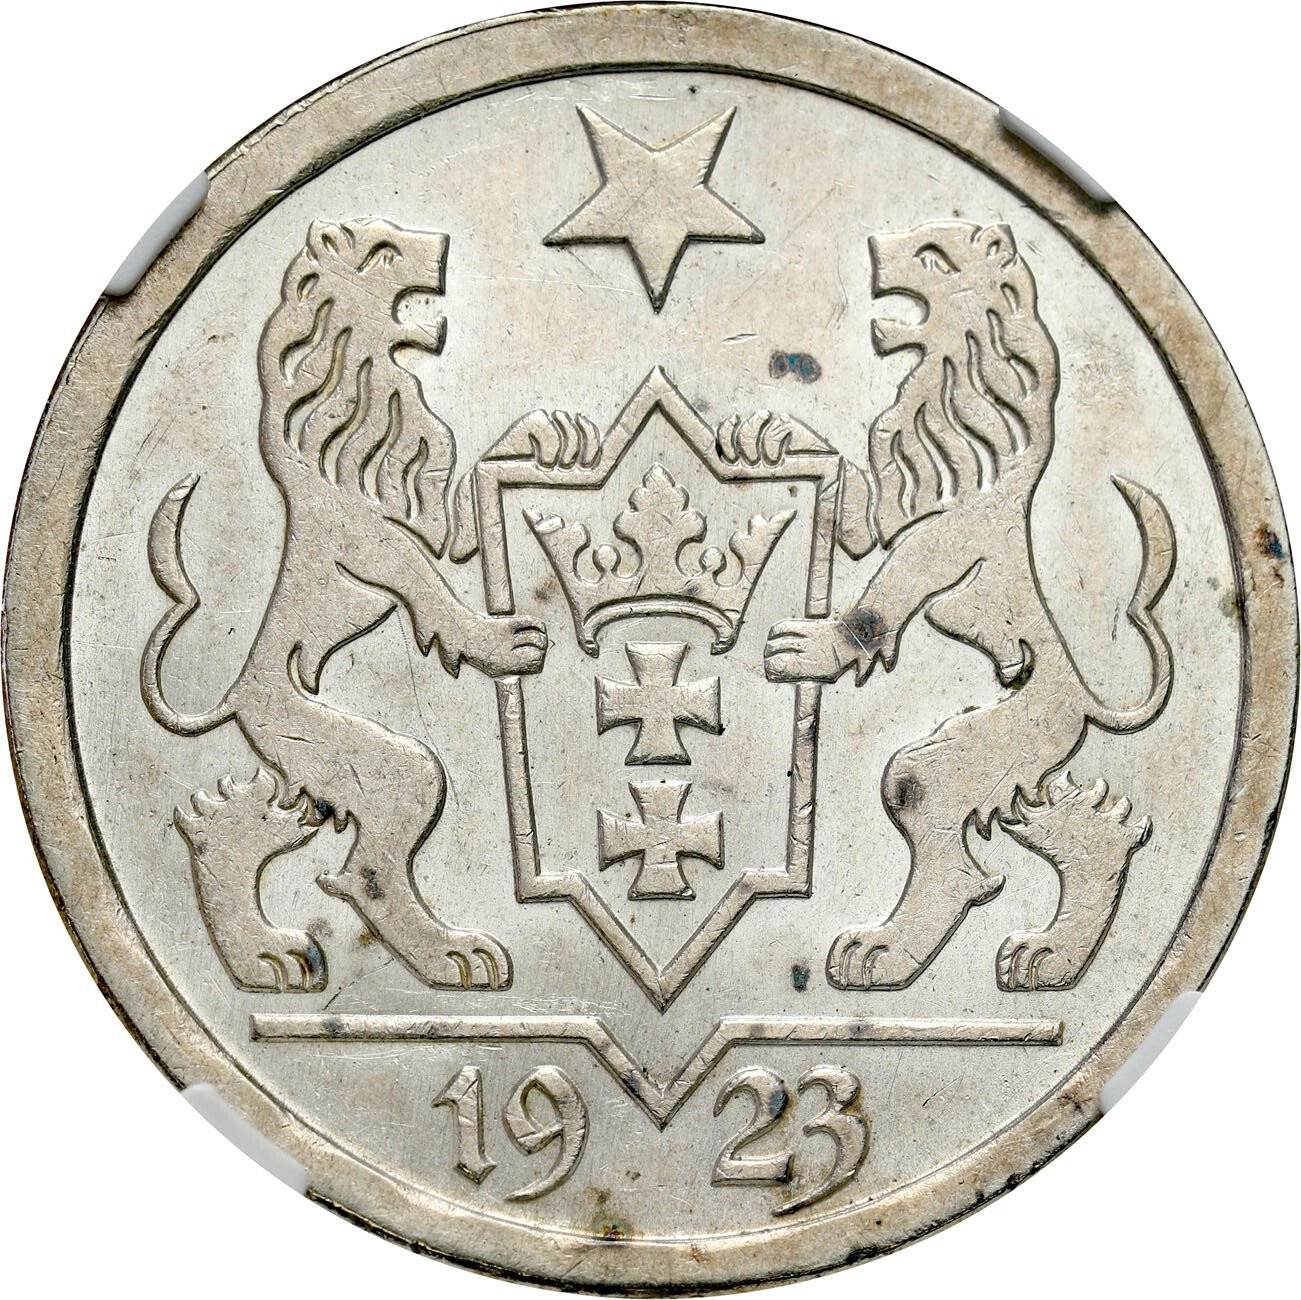 Wolne Miasto Gdańsk/Danzig. 2 Guldeny 1923 NGC MS63 - PIĘKNE